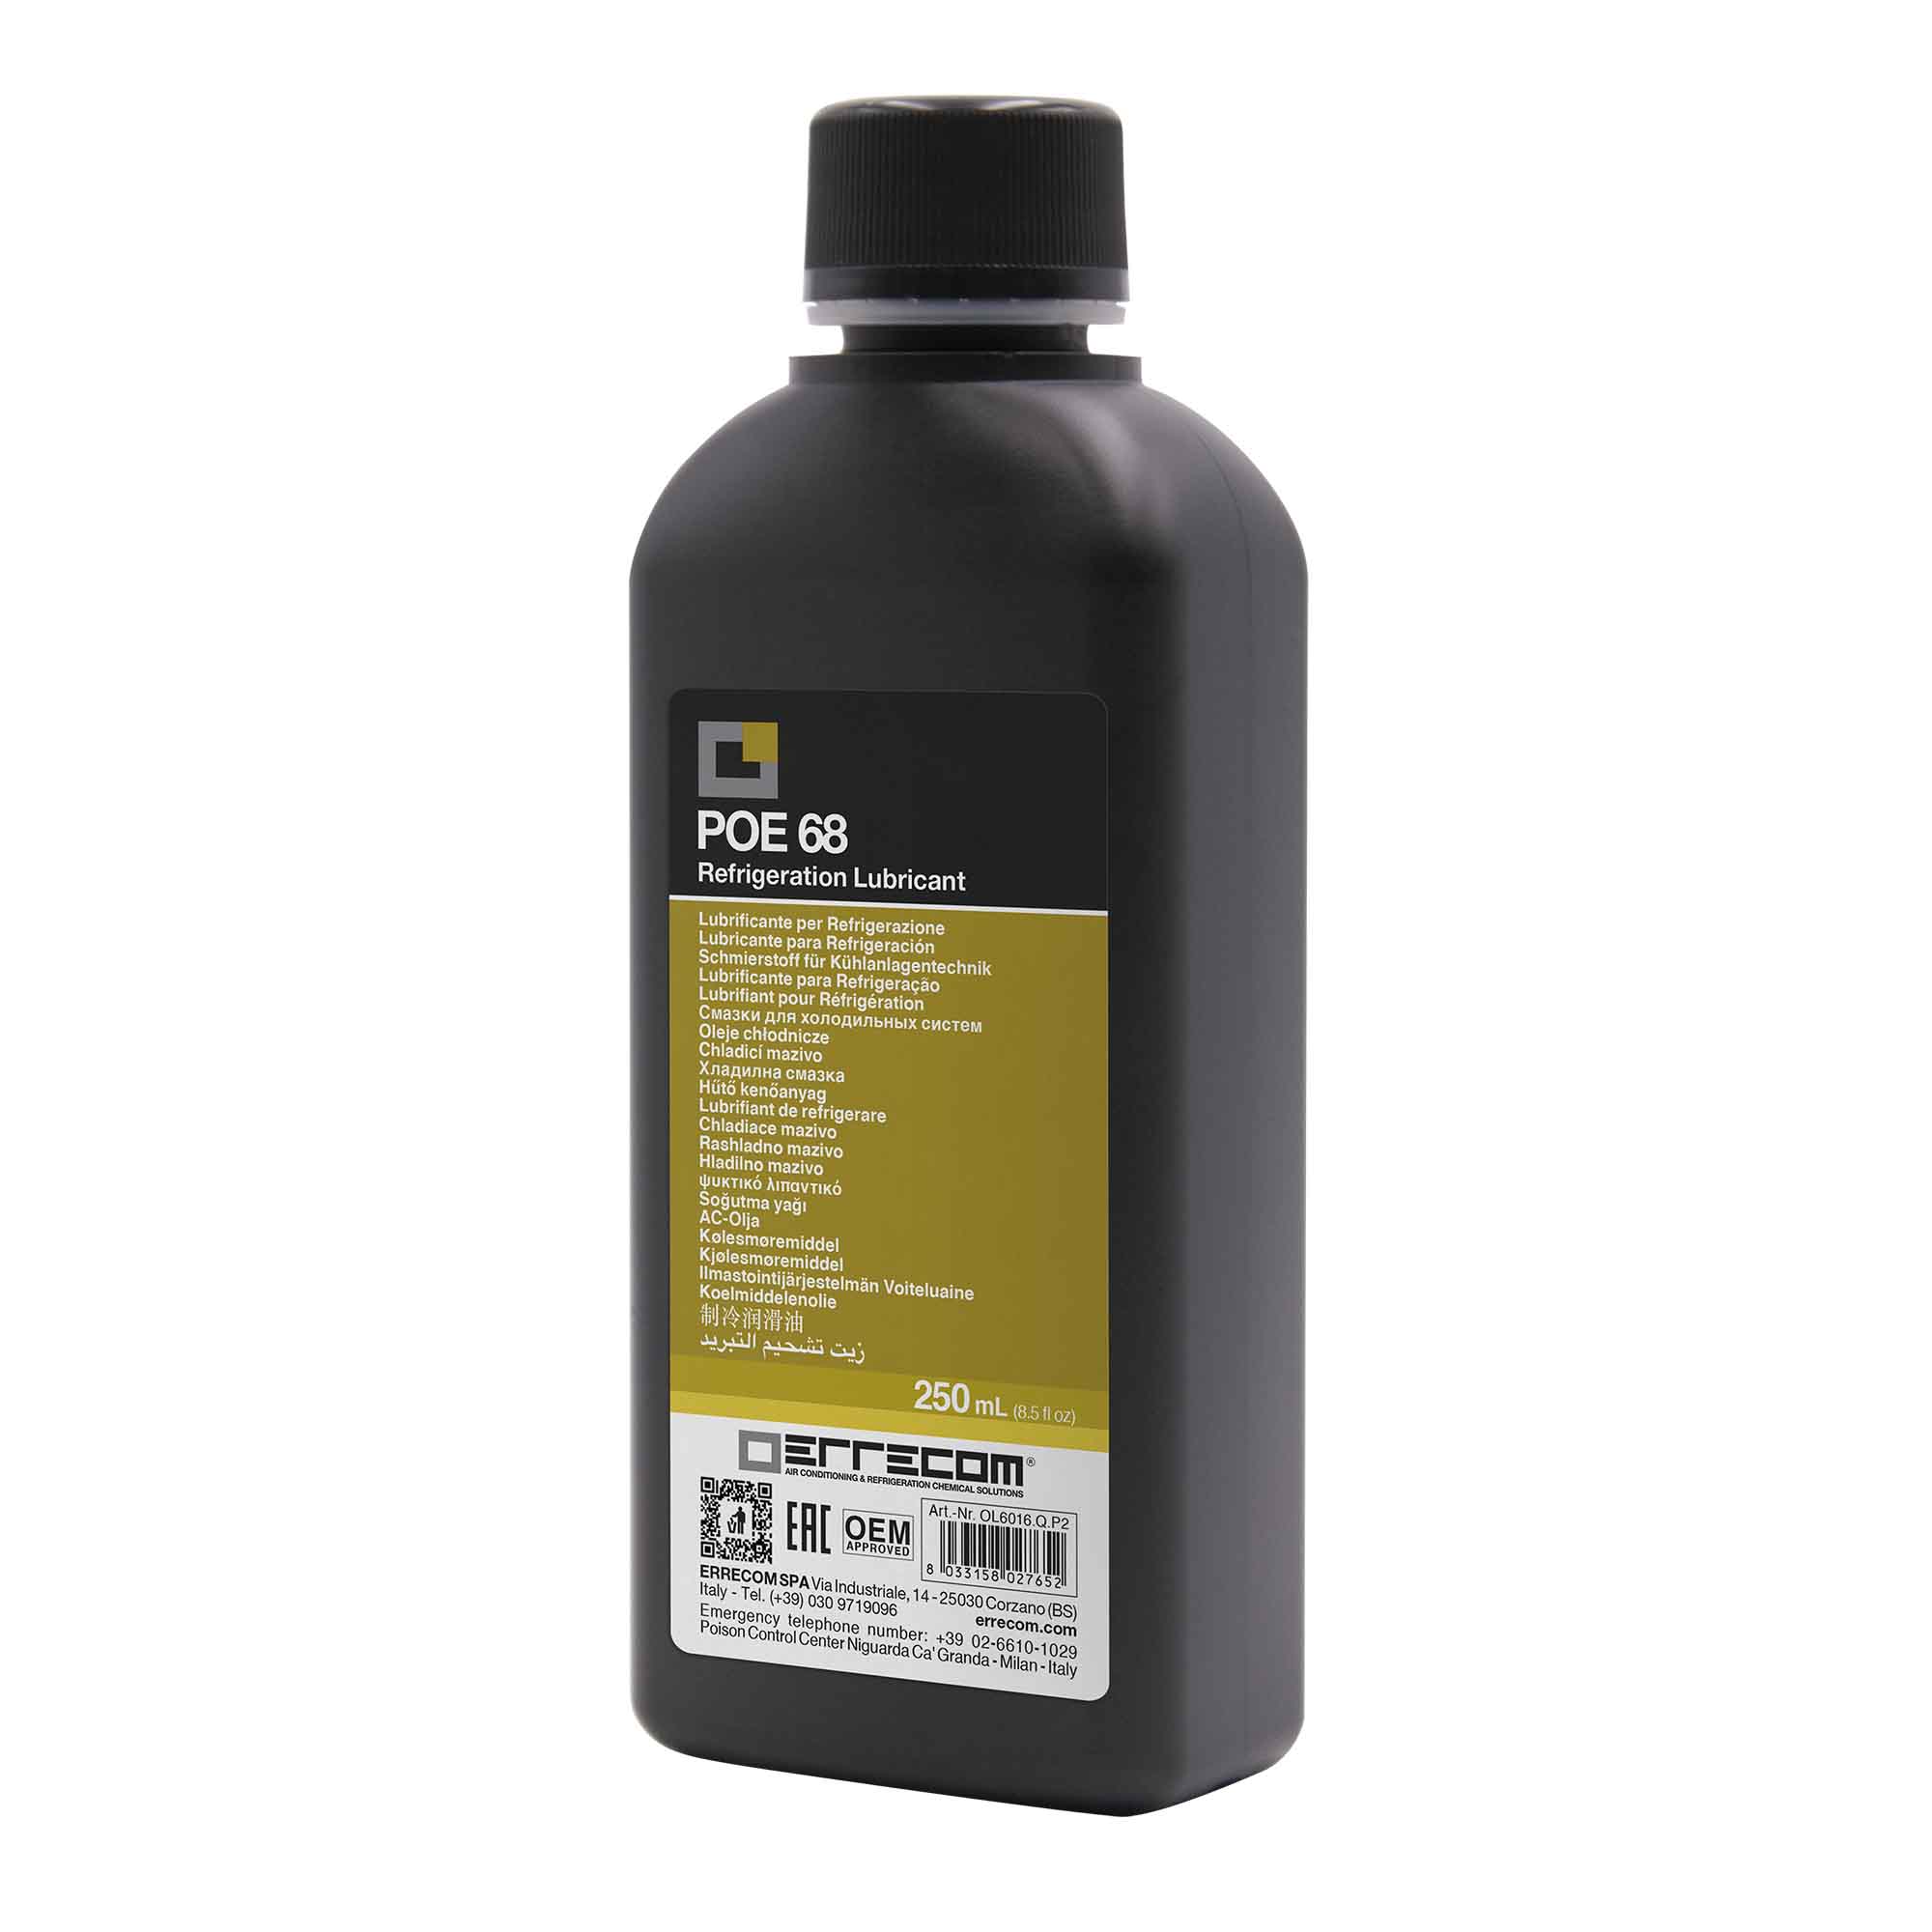 24 x Olio lubrificante R&AC Polyol Estere (POE) Errecom 68 - Tanica in Plastica da 250 ml. - Confezione n° 24 pz. (totale 6 litri)